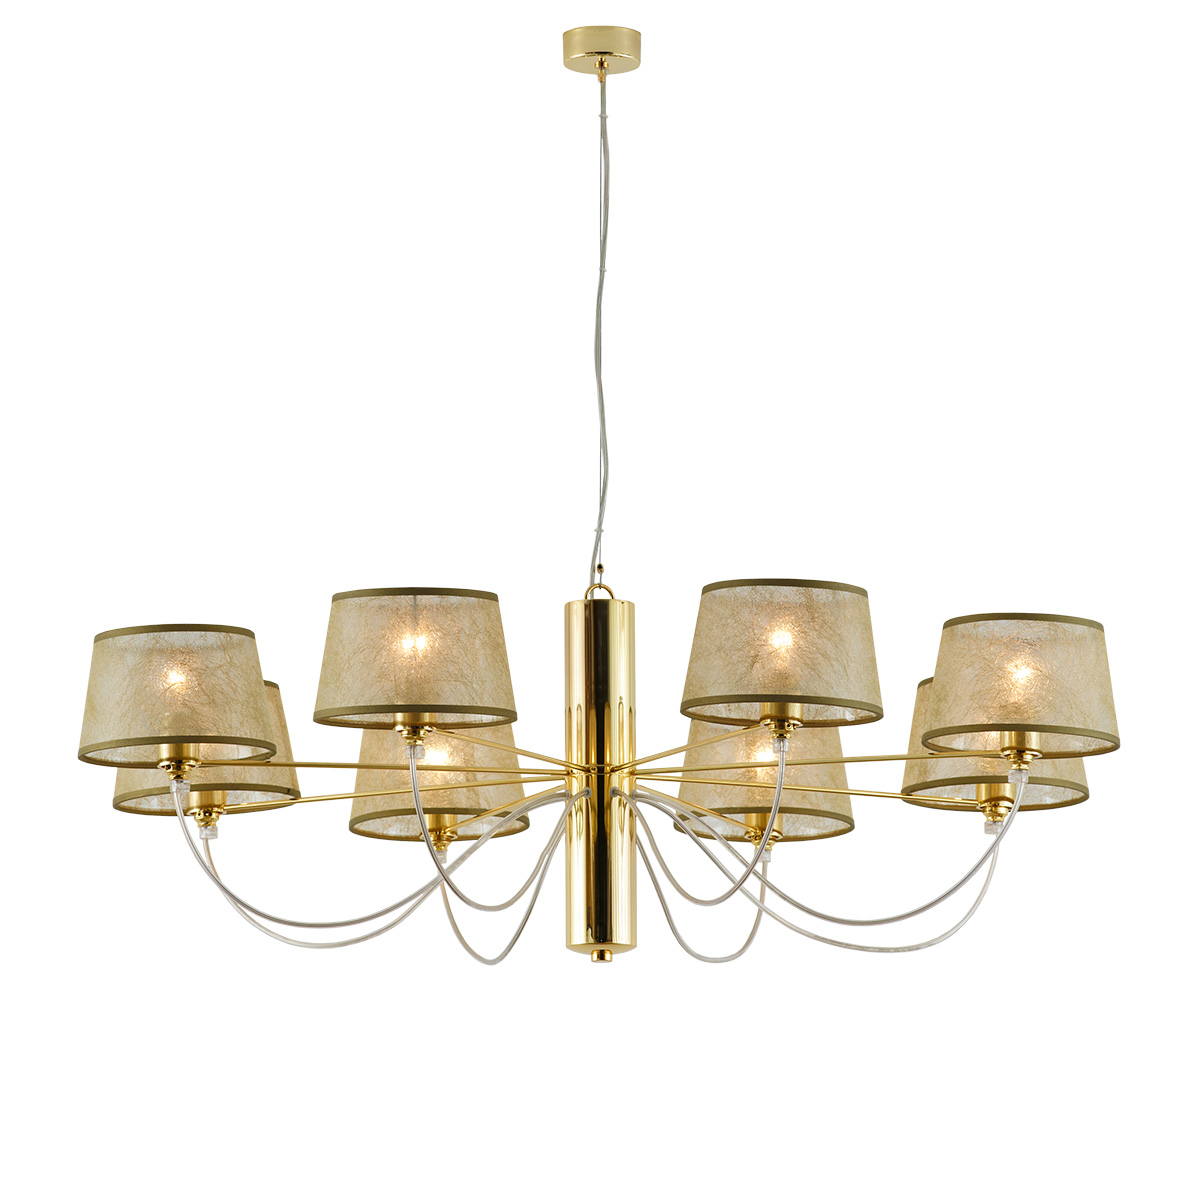 Χρυσό μοντέρνο 8φωτο φωτιστικό ΟΡΓΑΝΤΖΑ modern gold 8-bulb chandelier